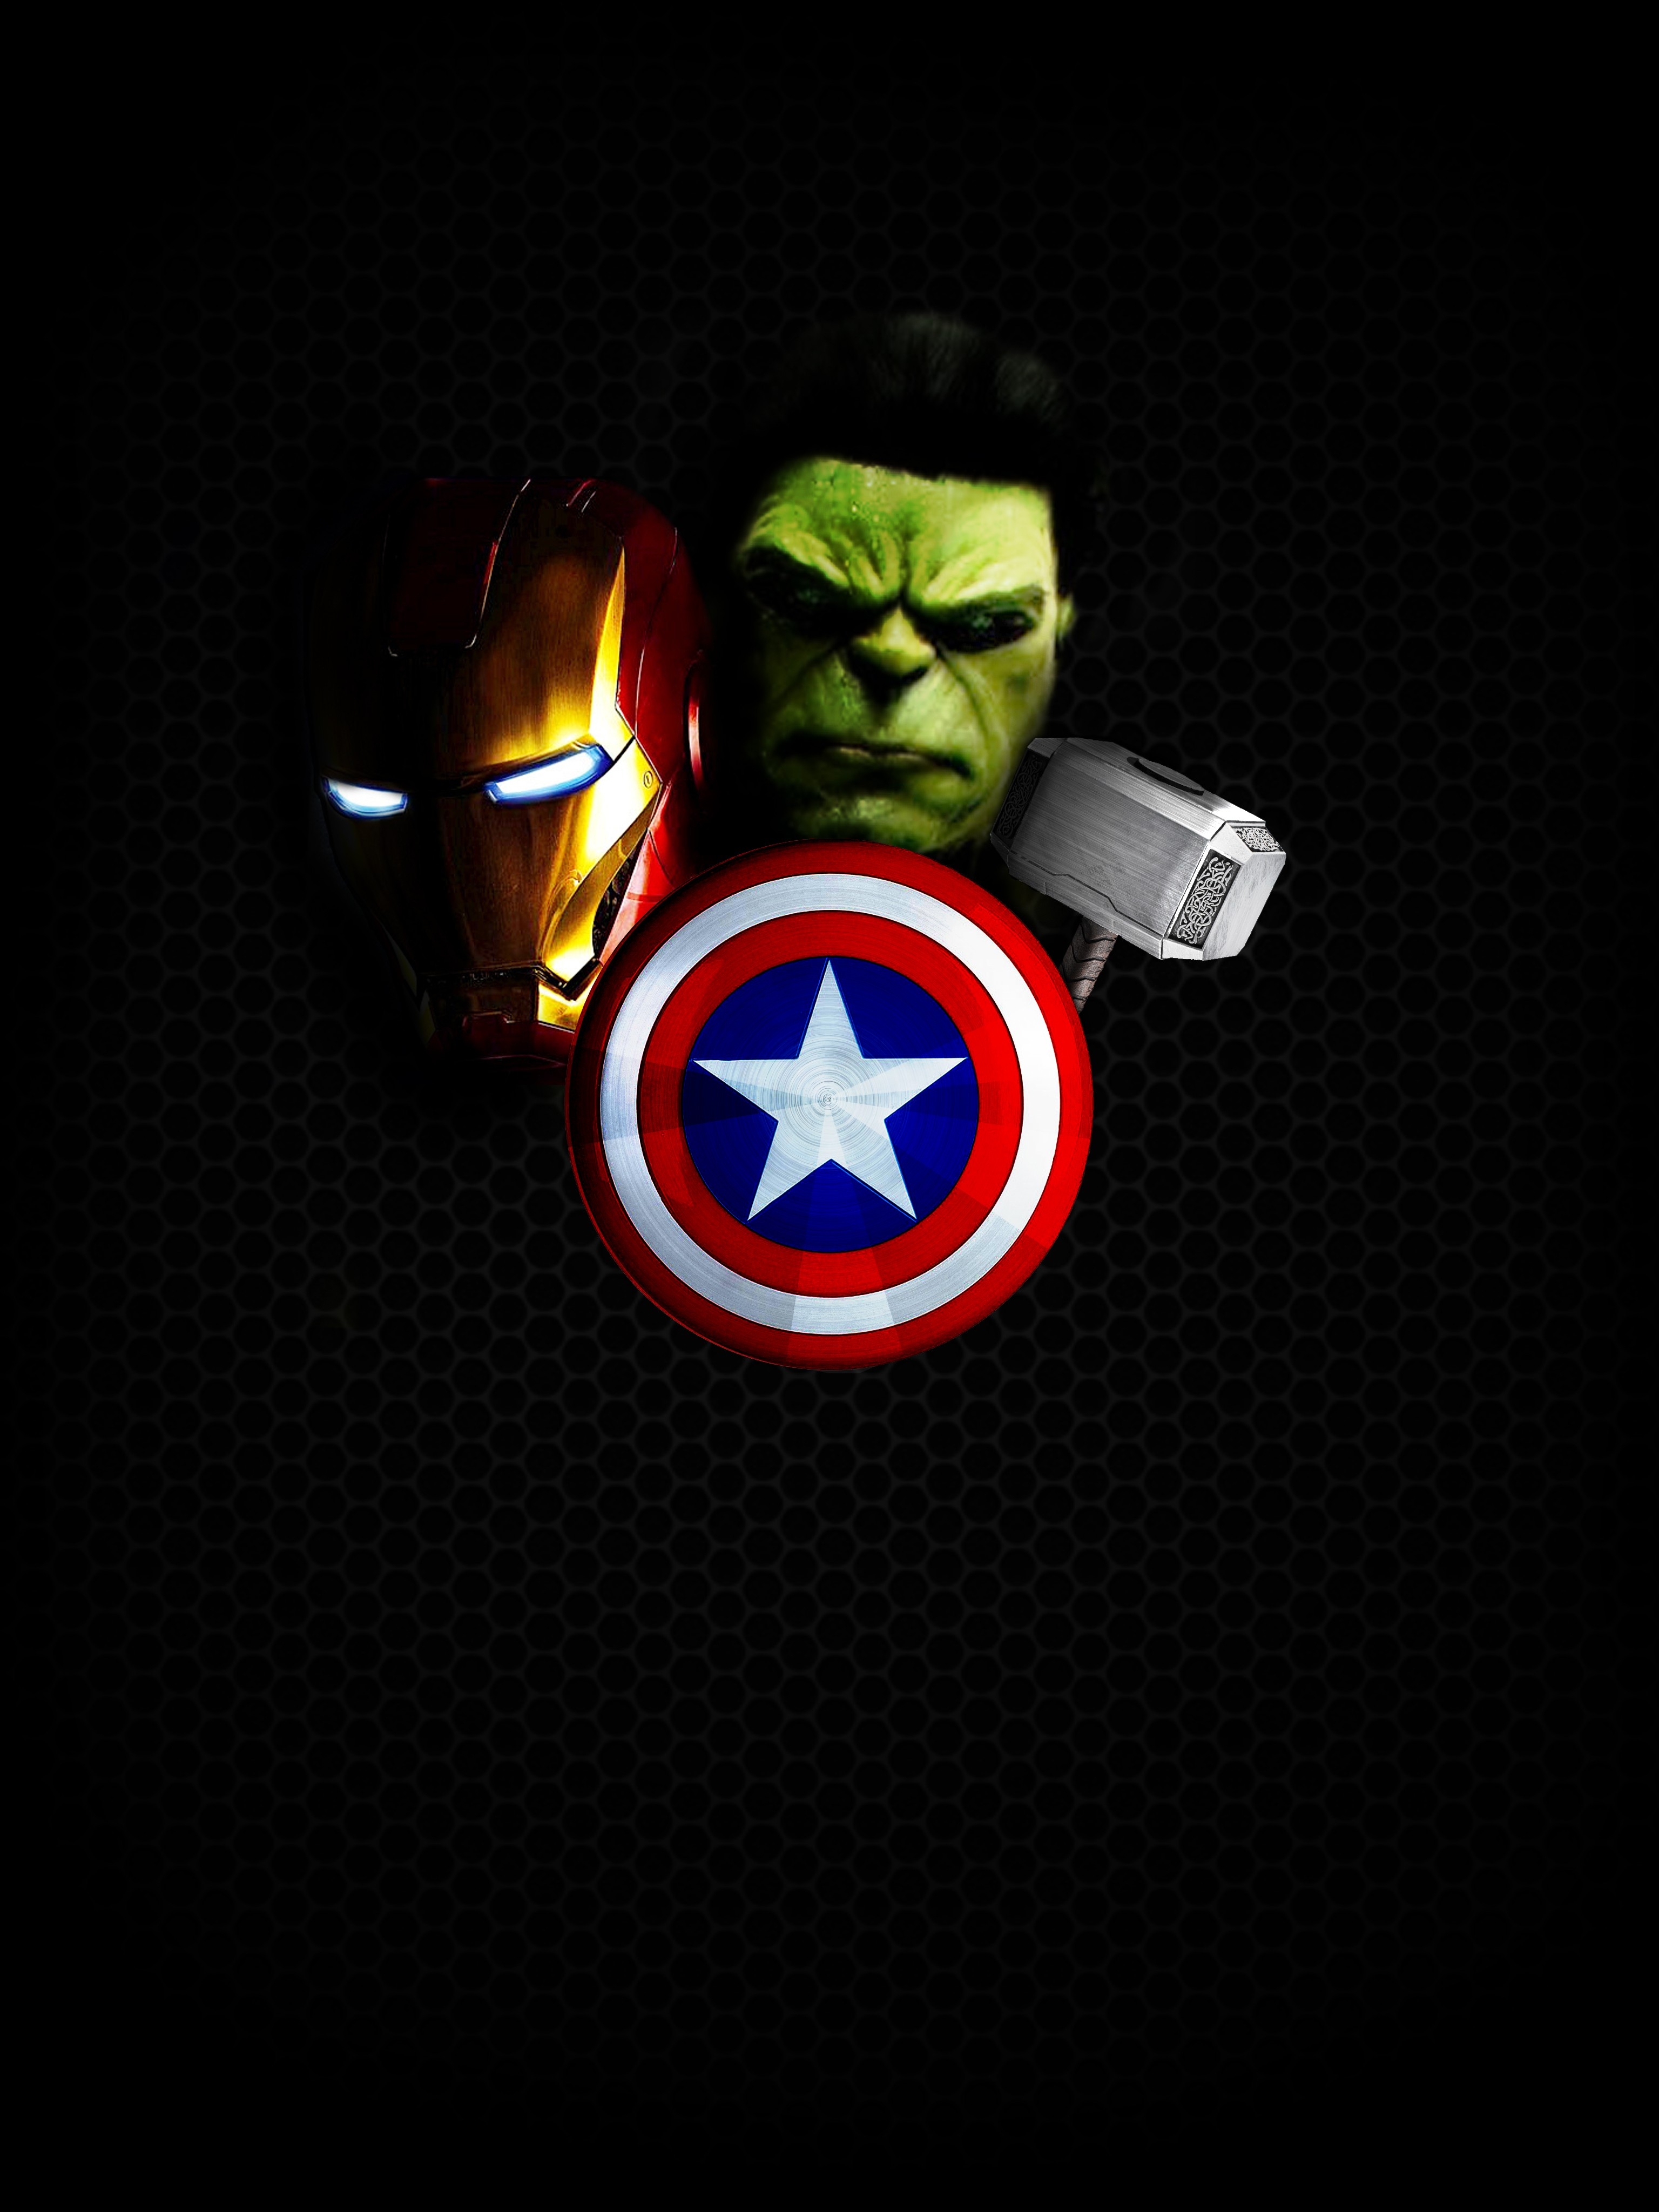 Captain America Mjolnir Avengers Endgame Artwork HD phone wallpaper  Pxfuel